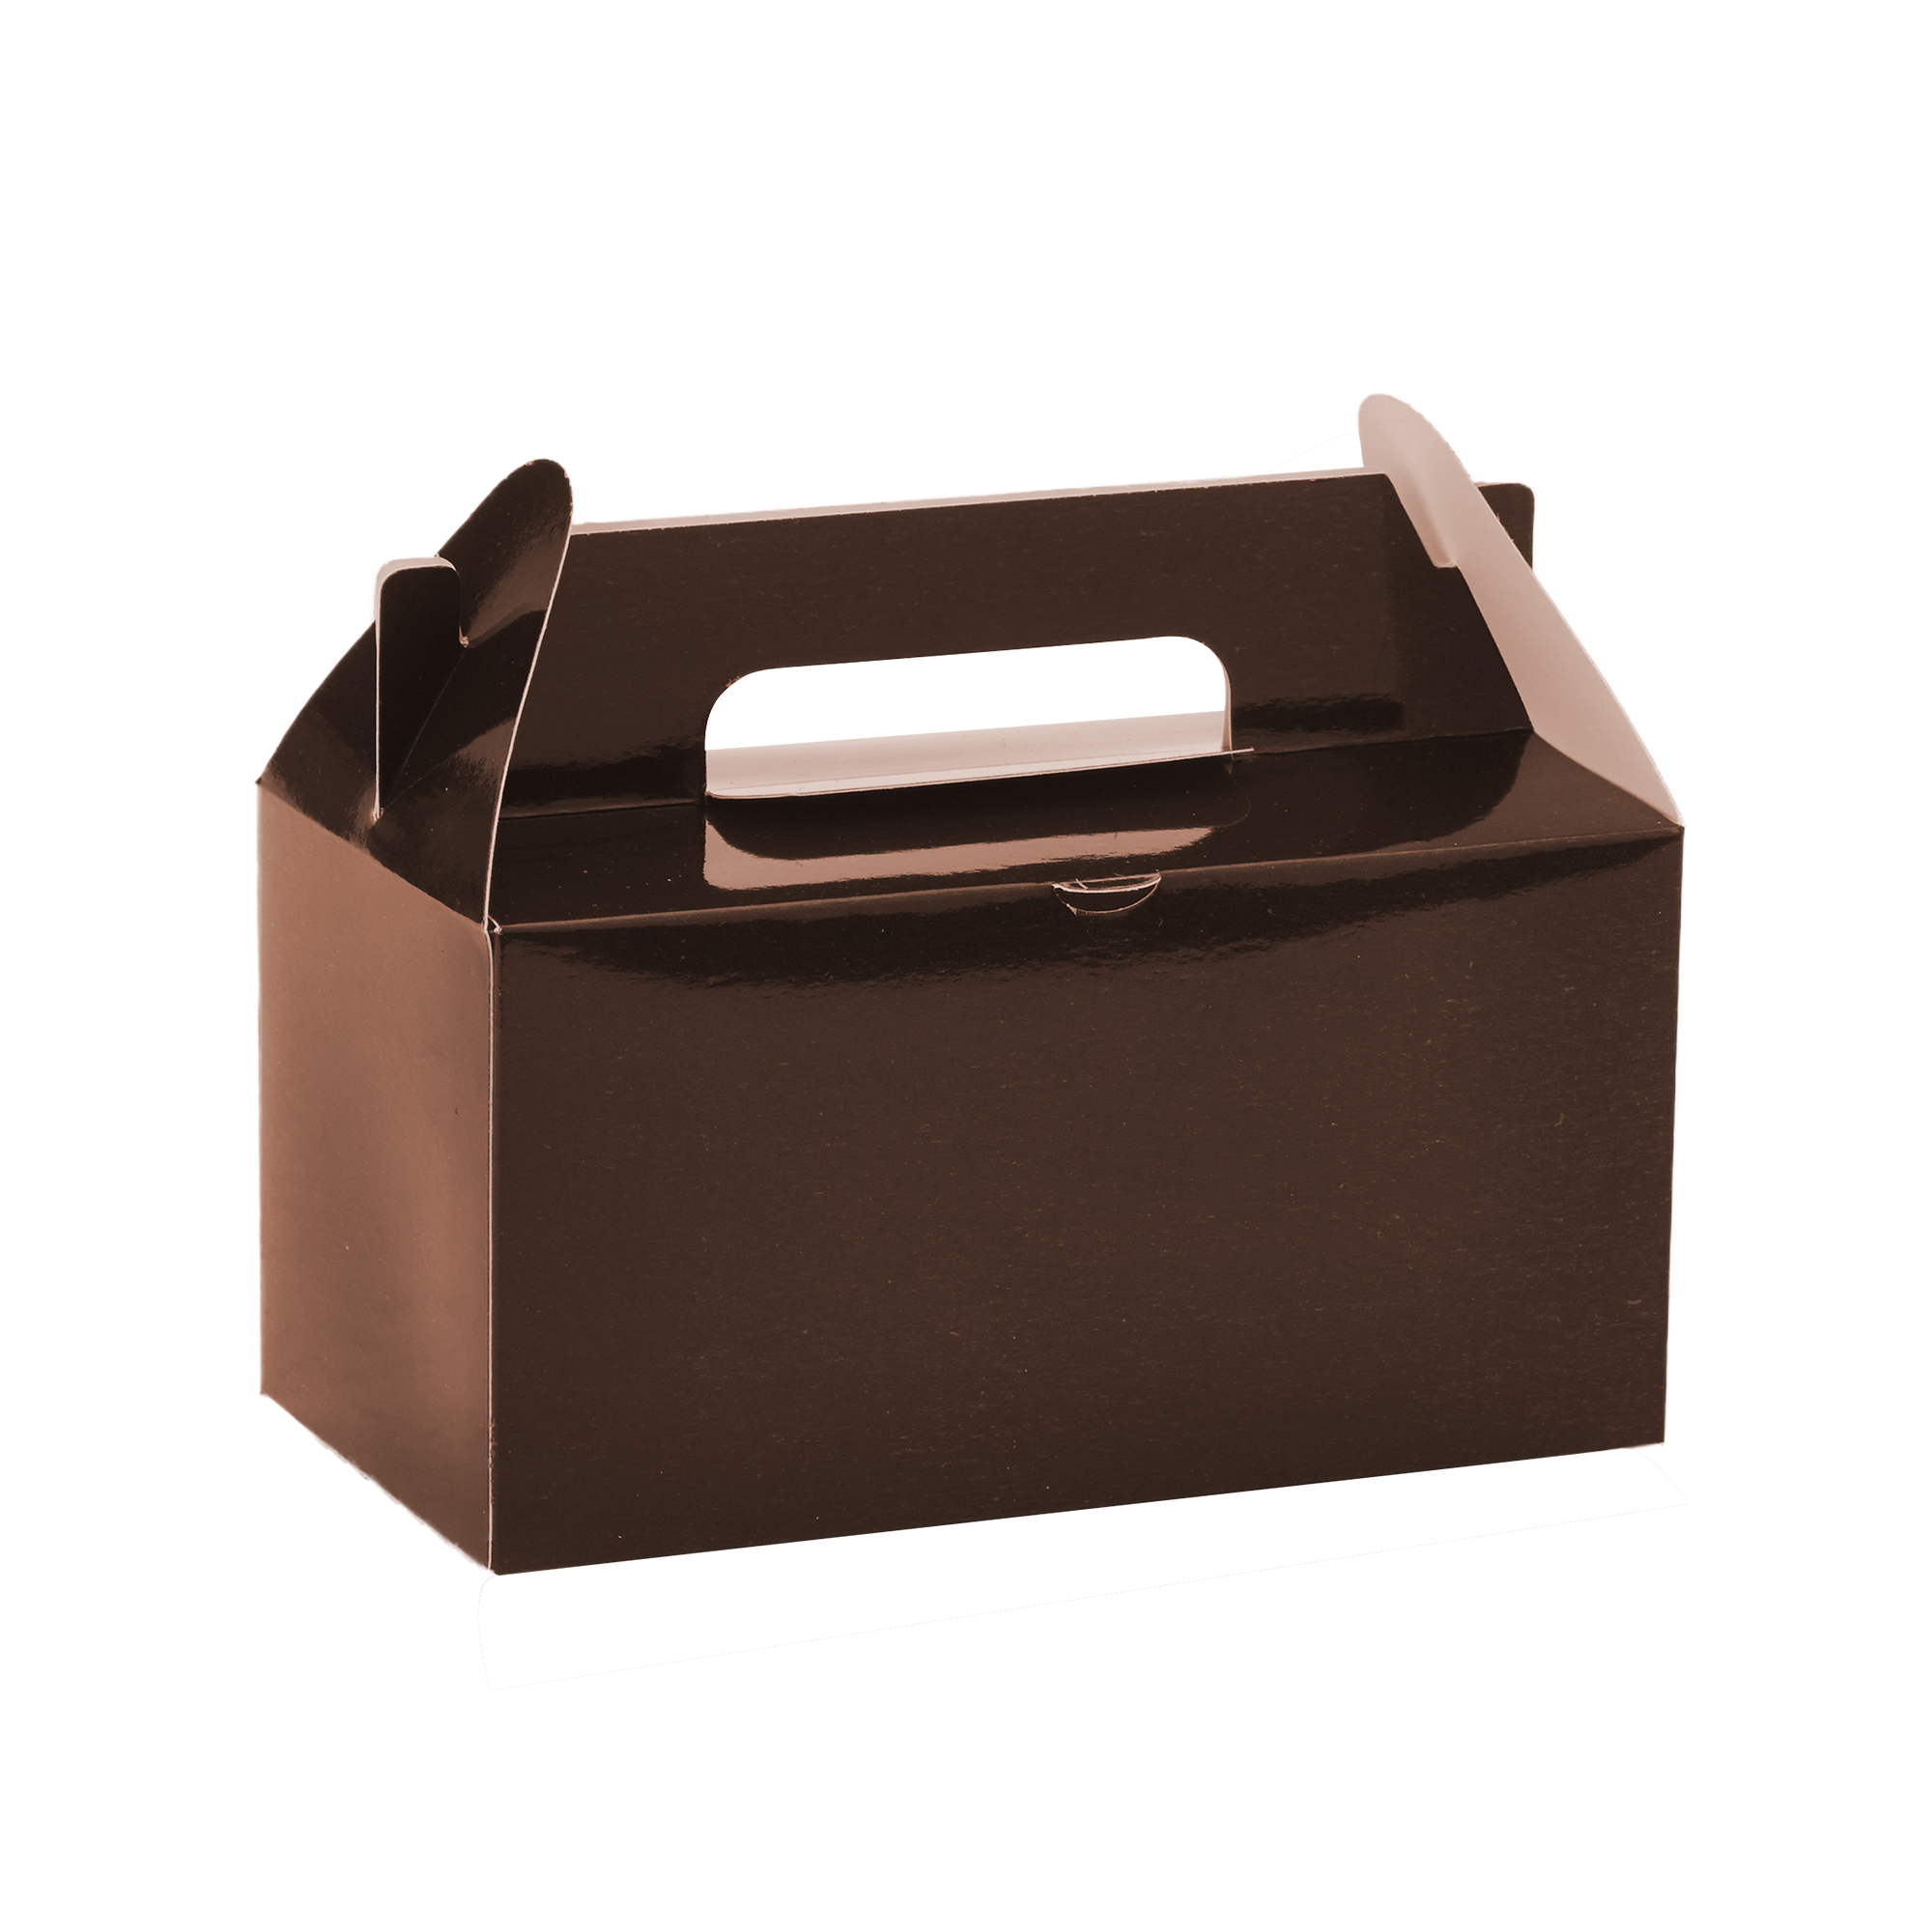 Takeout Box 12pcs/bag - Brown